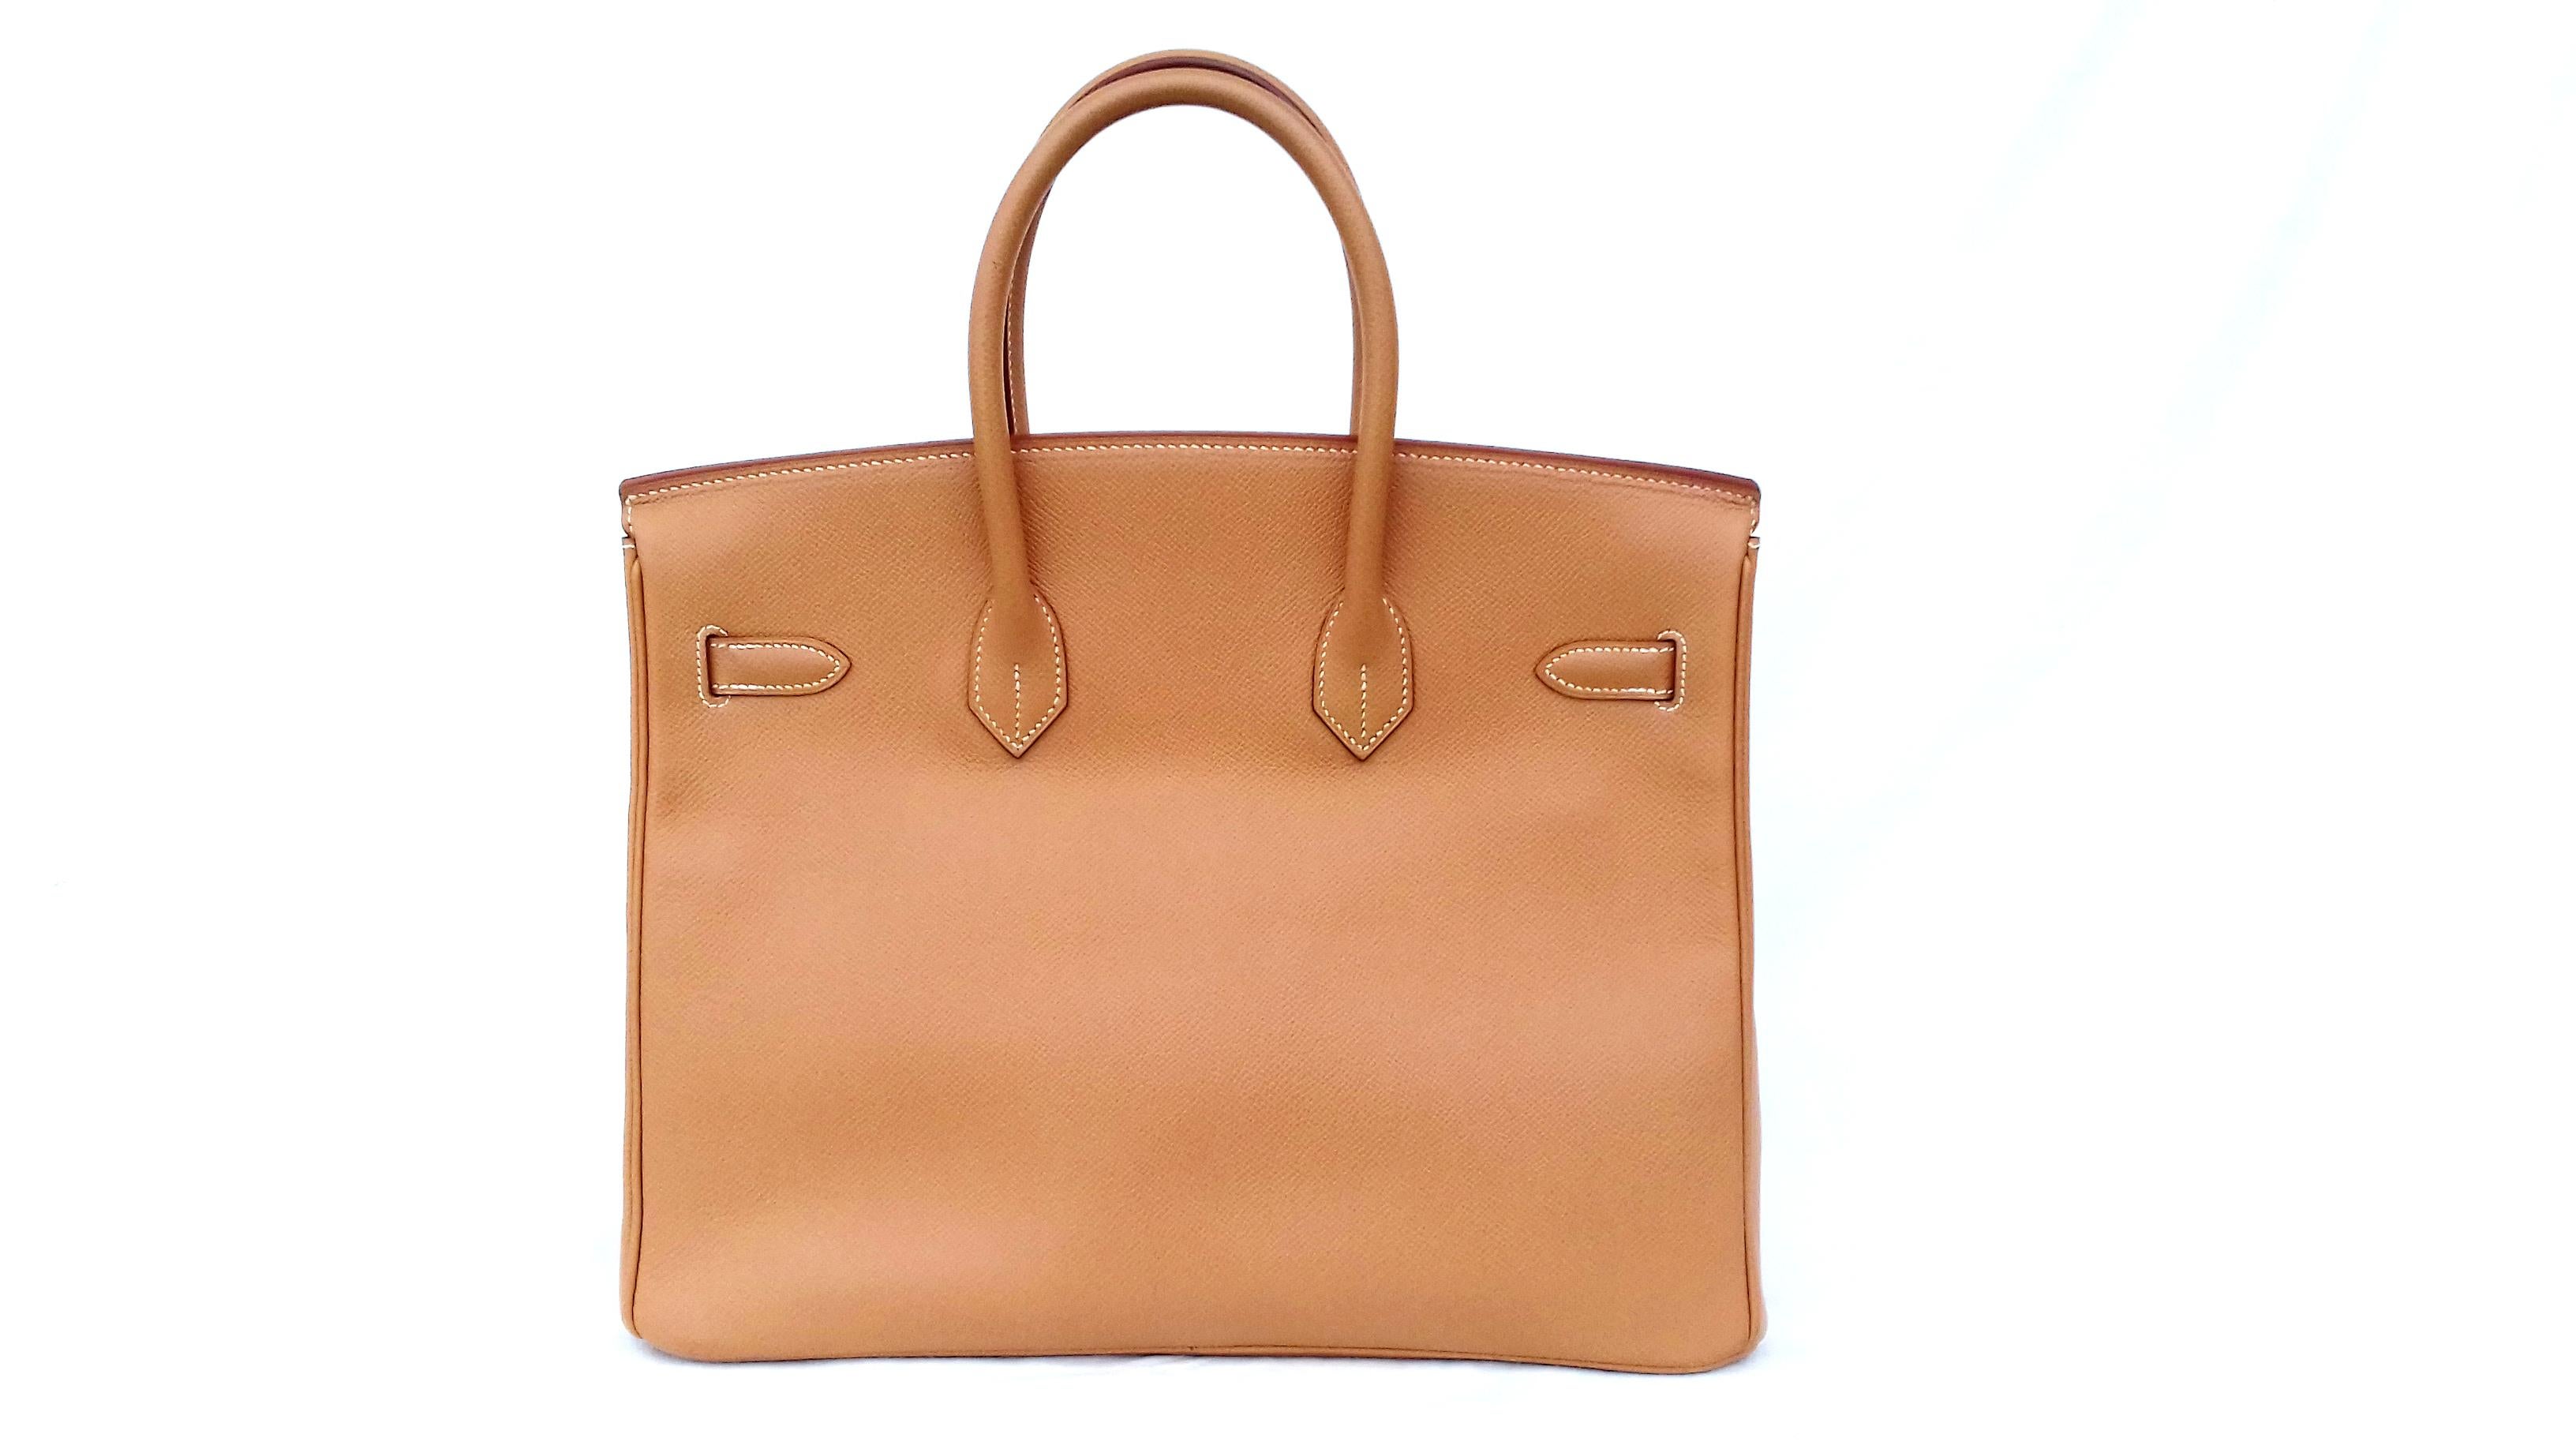 Brown Hermès Birkin Top Handle Bag Naturel Epsom Leather Gold Hdw 35 cm